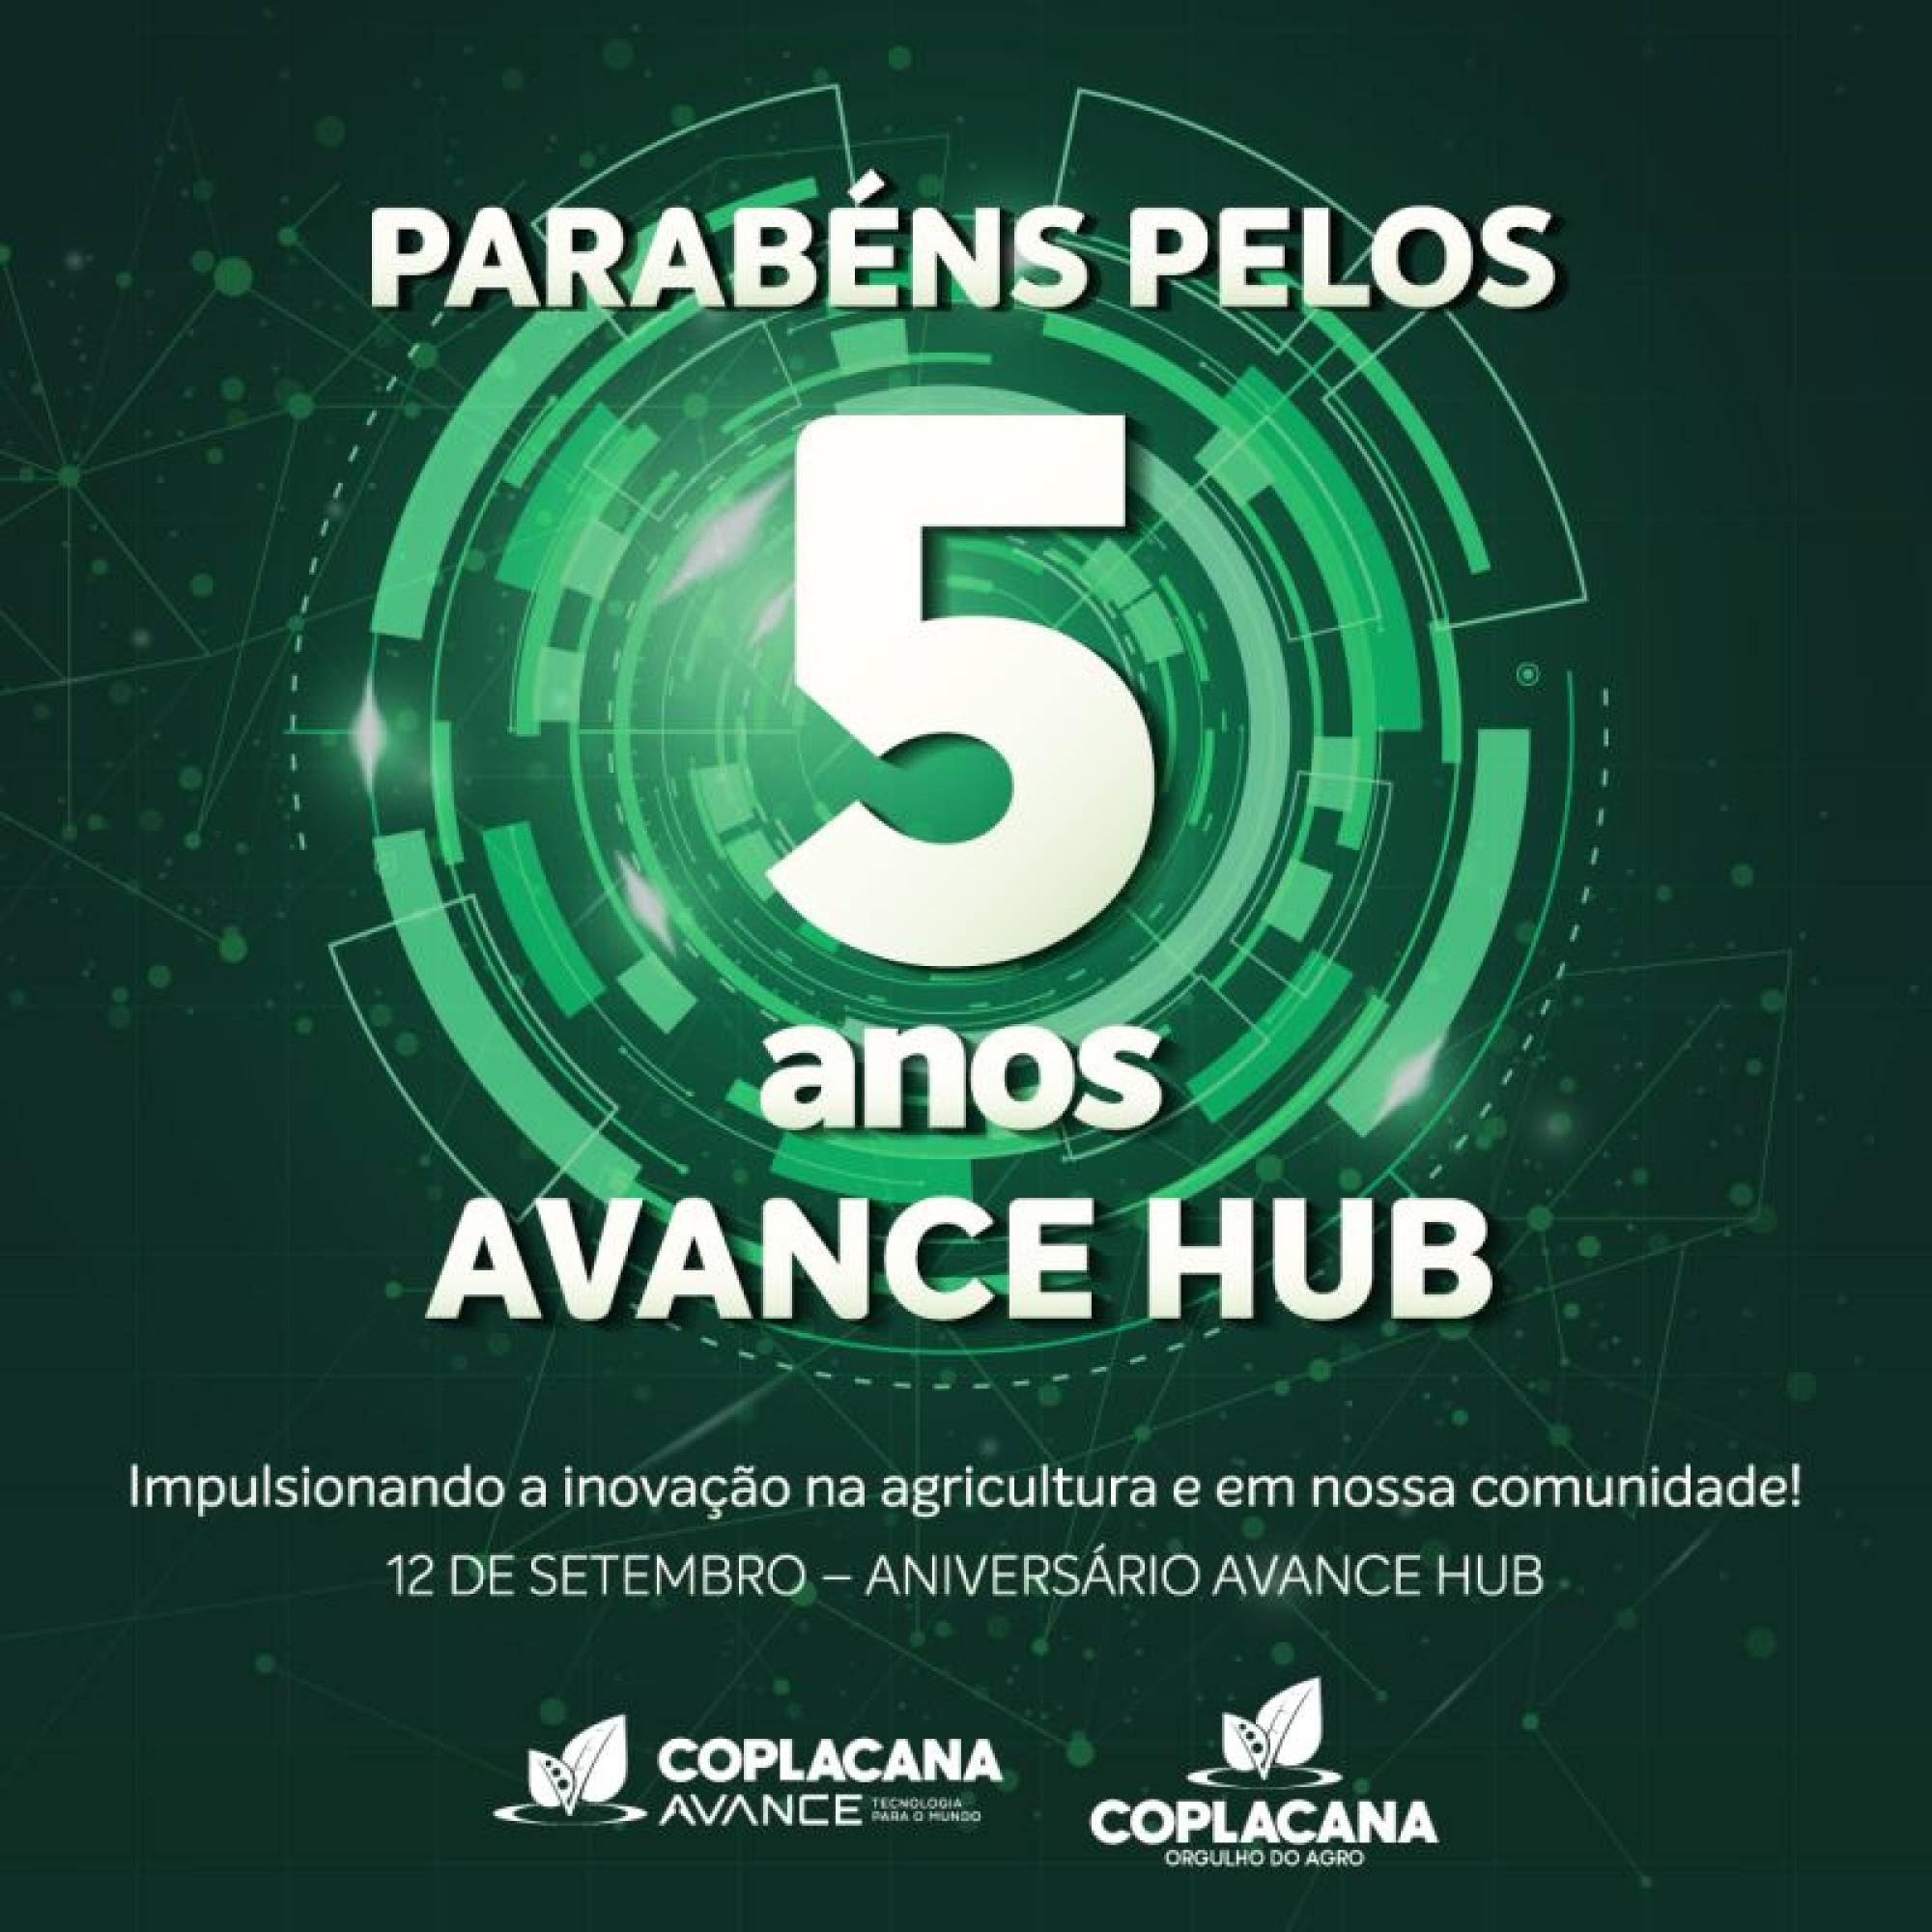 Avance Hub: Sistema Ocesp participa da celebração da Coplacana sobre inovação